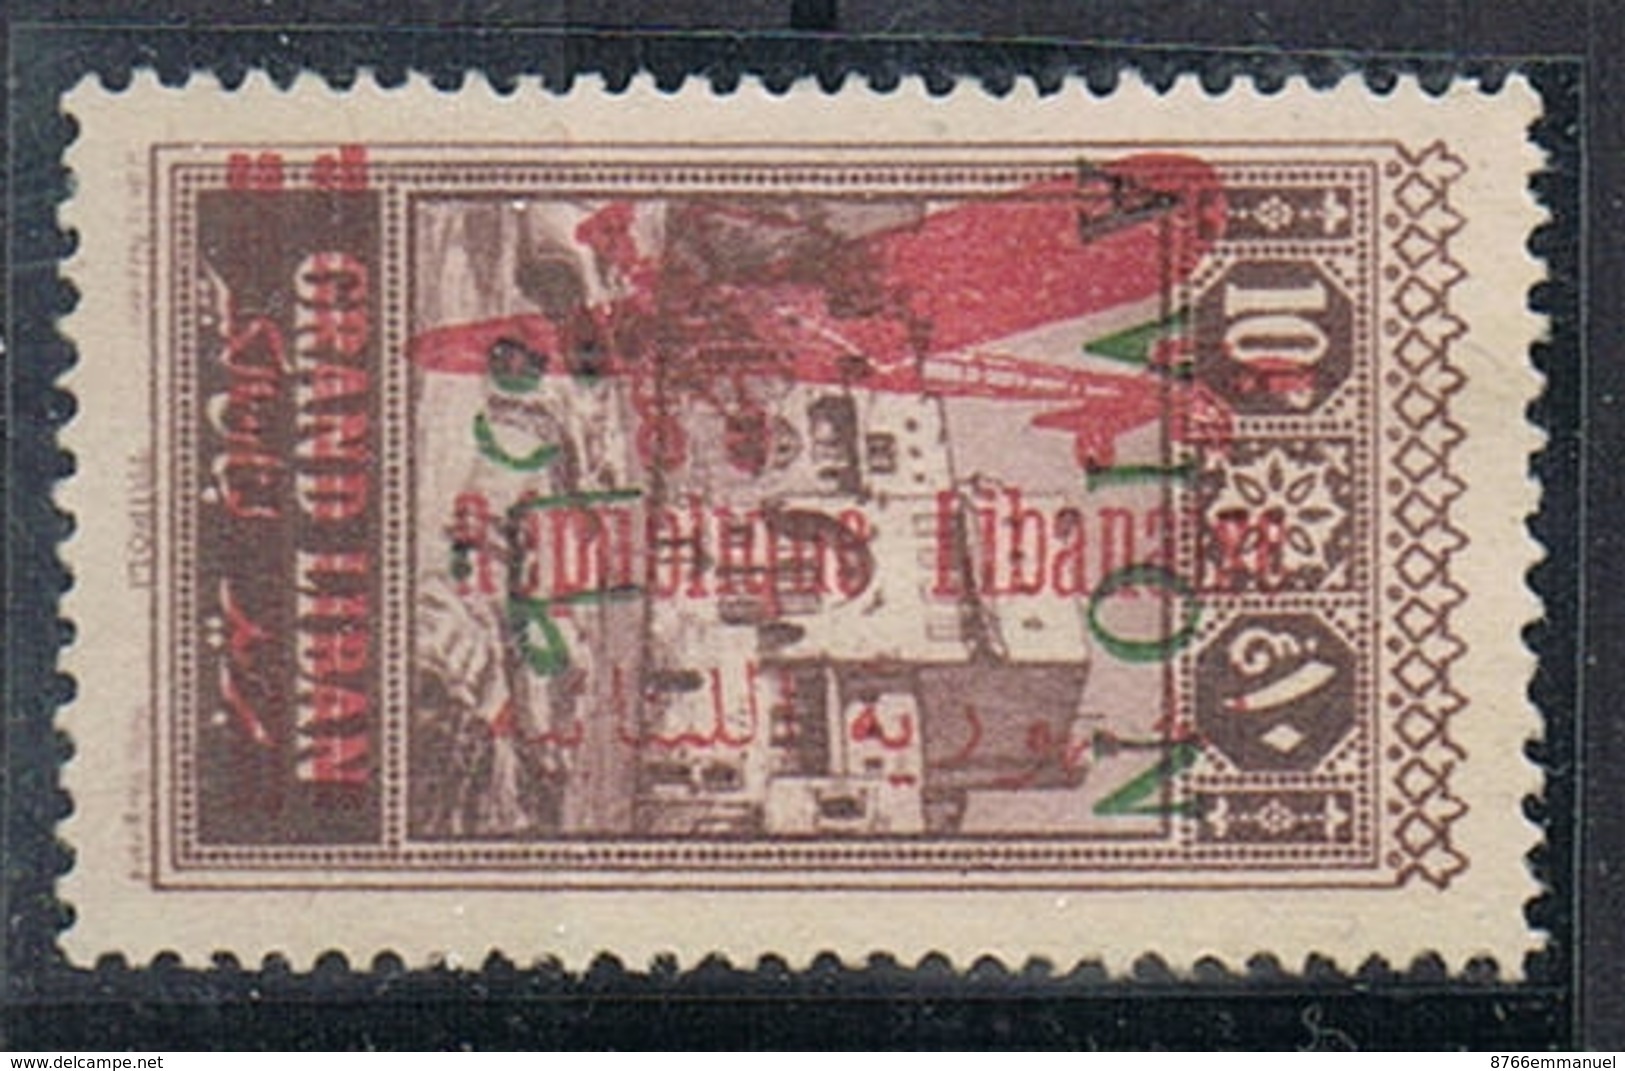 GRAND LIBAN AERIEN N°35a N*  Variété Surcharge Apposée Sur Timbre Aerien N°12 (surcharge Verte +rouge) - Luftpost